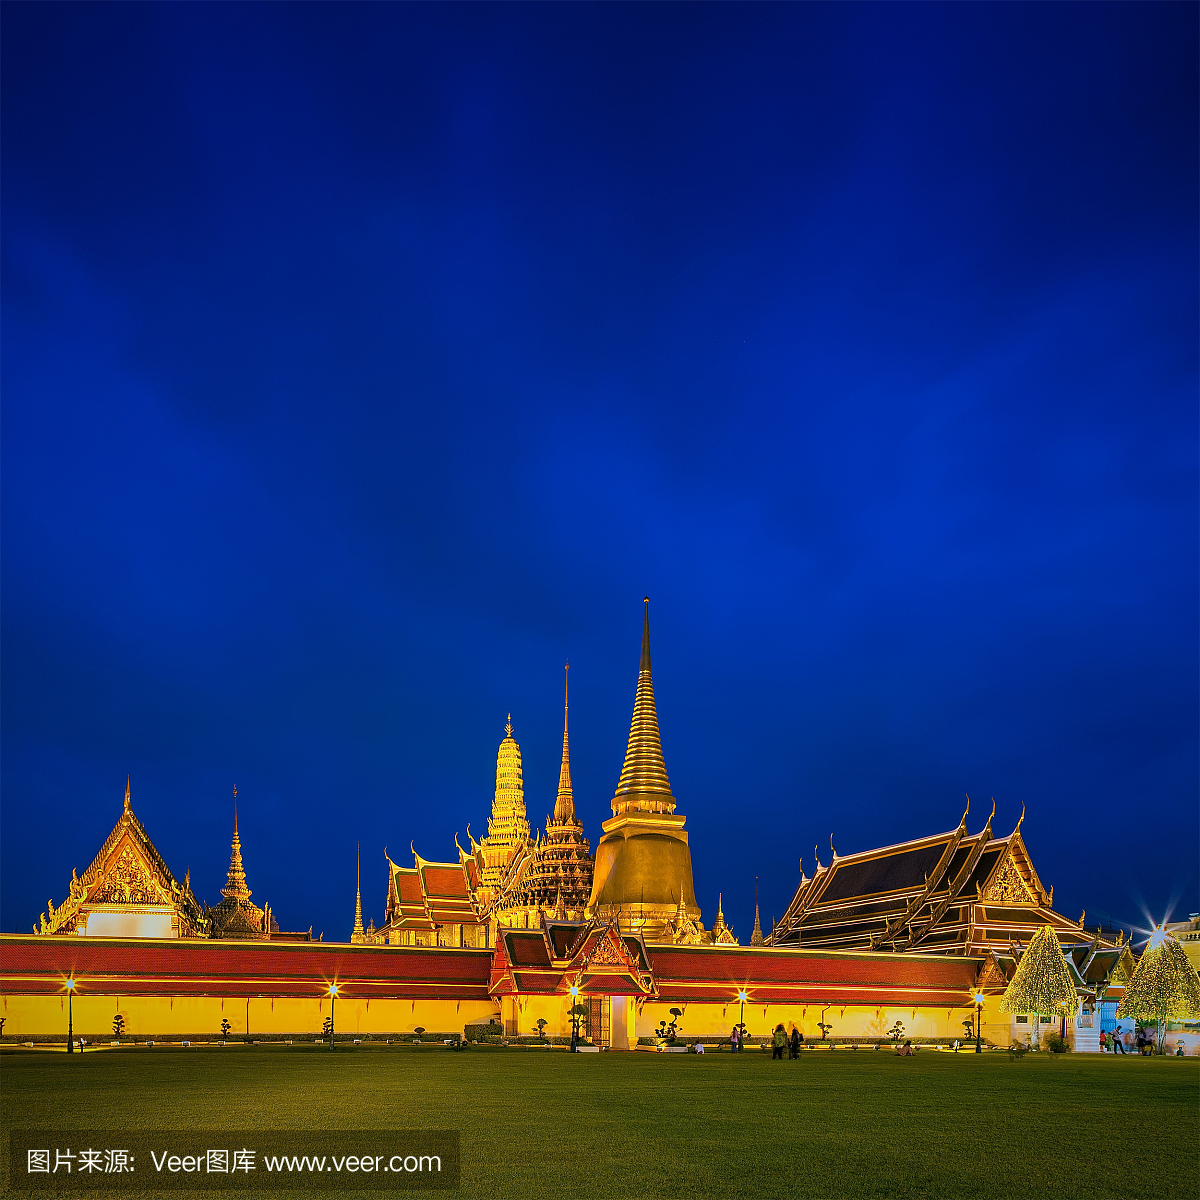 夜晚,泰国文化,无人,宫殿